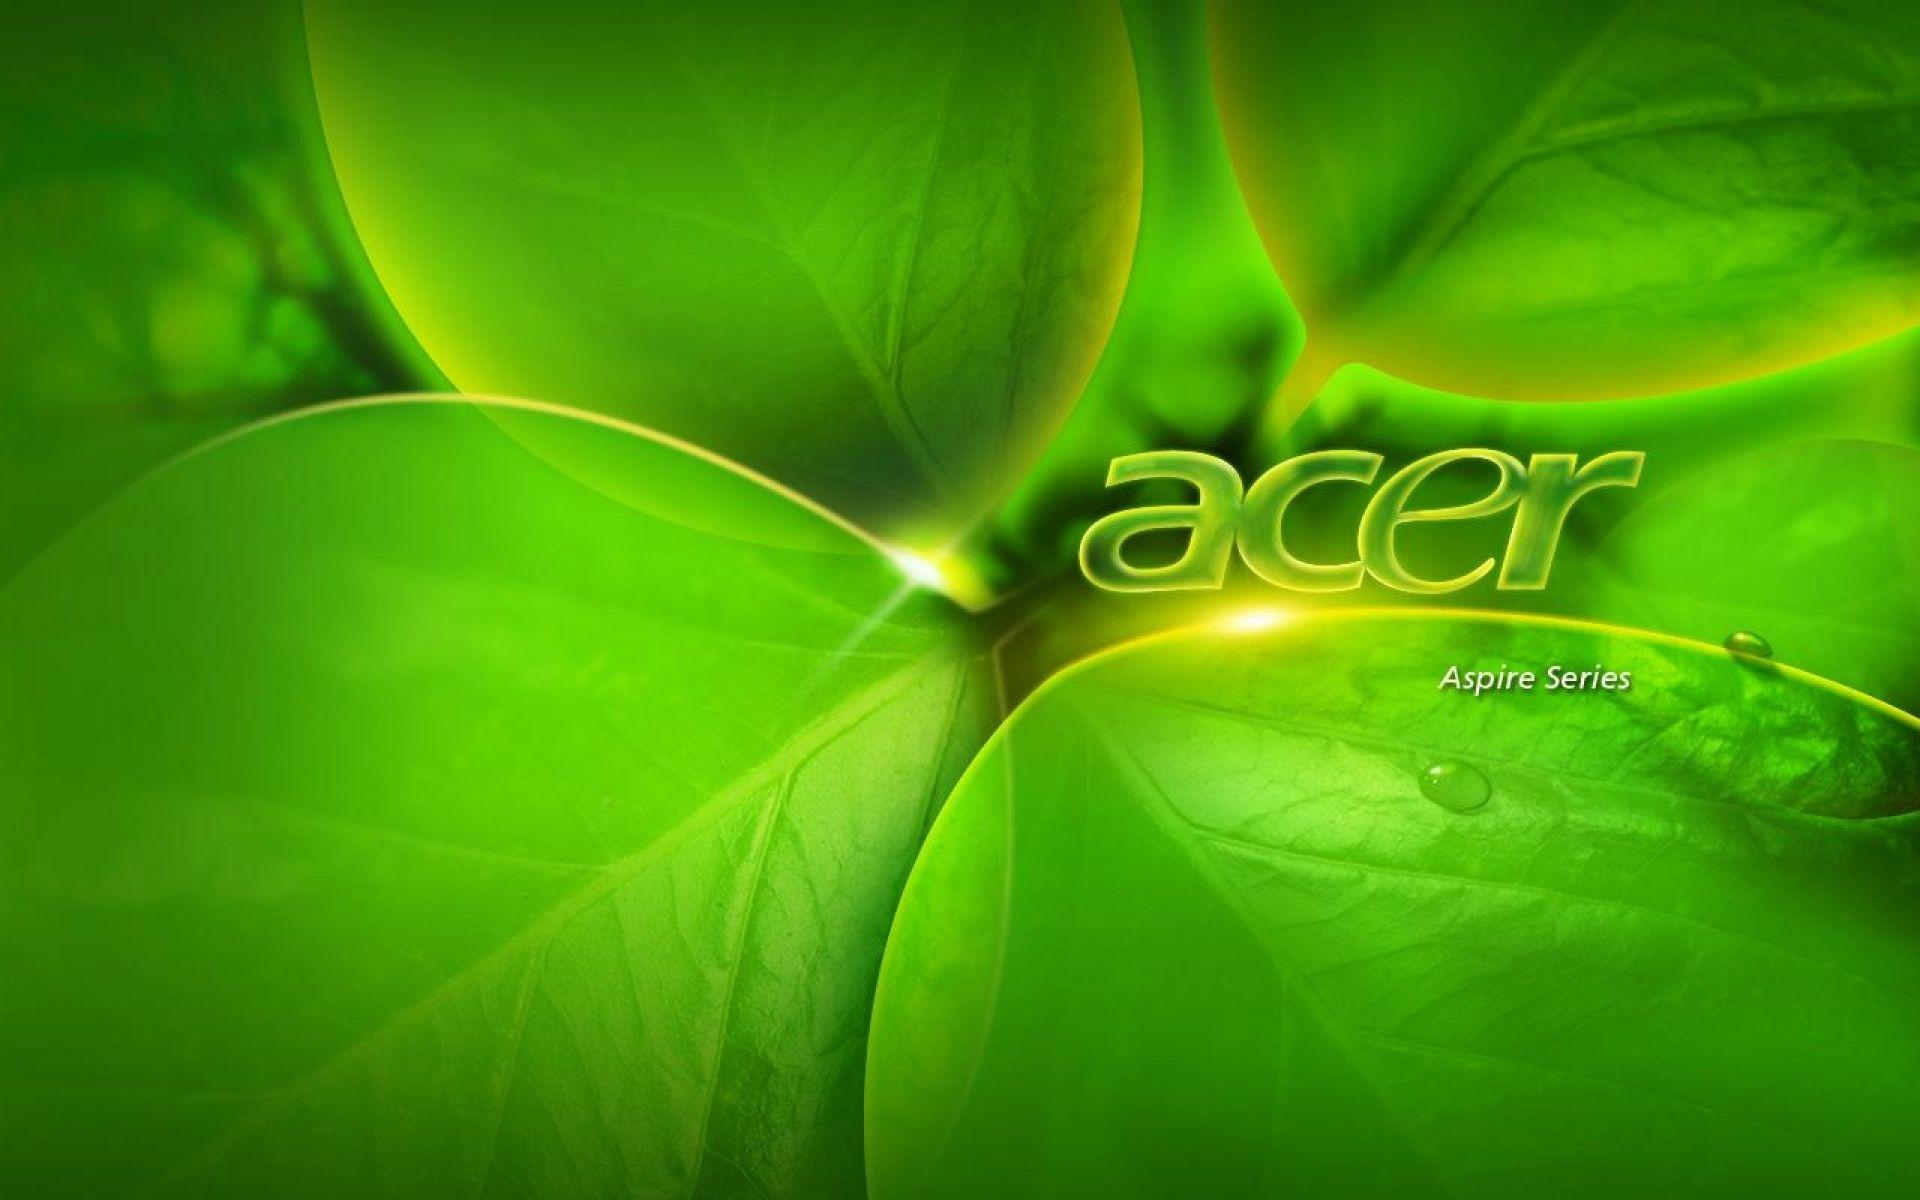 acer logo wallpaper